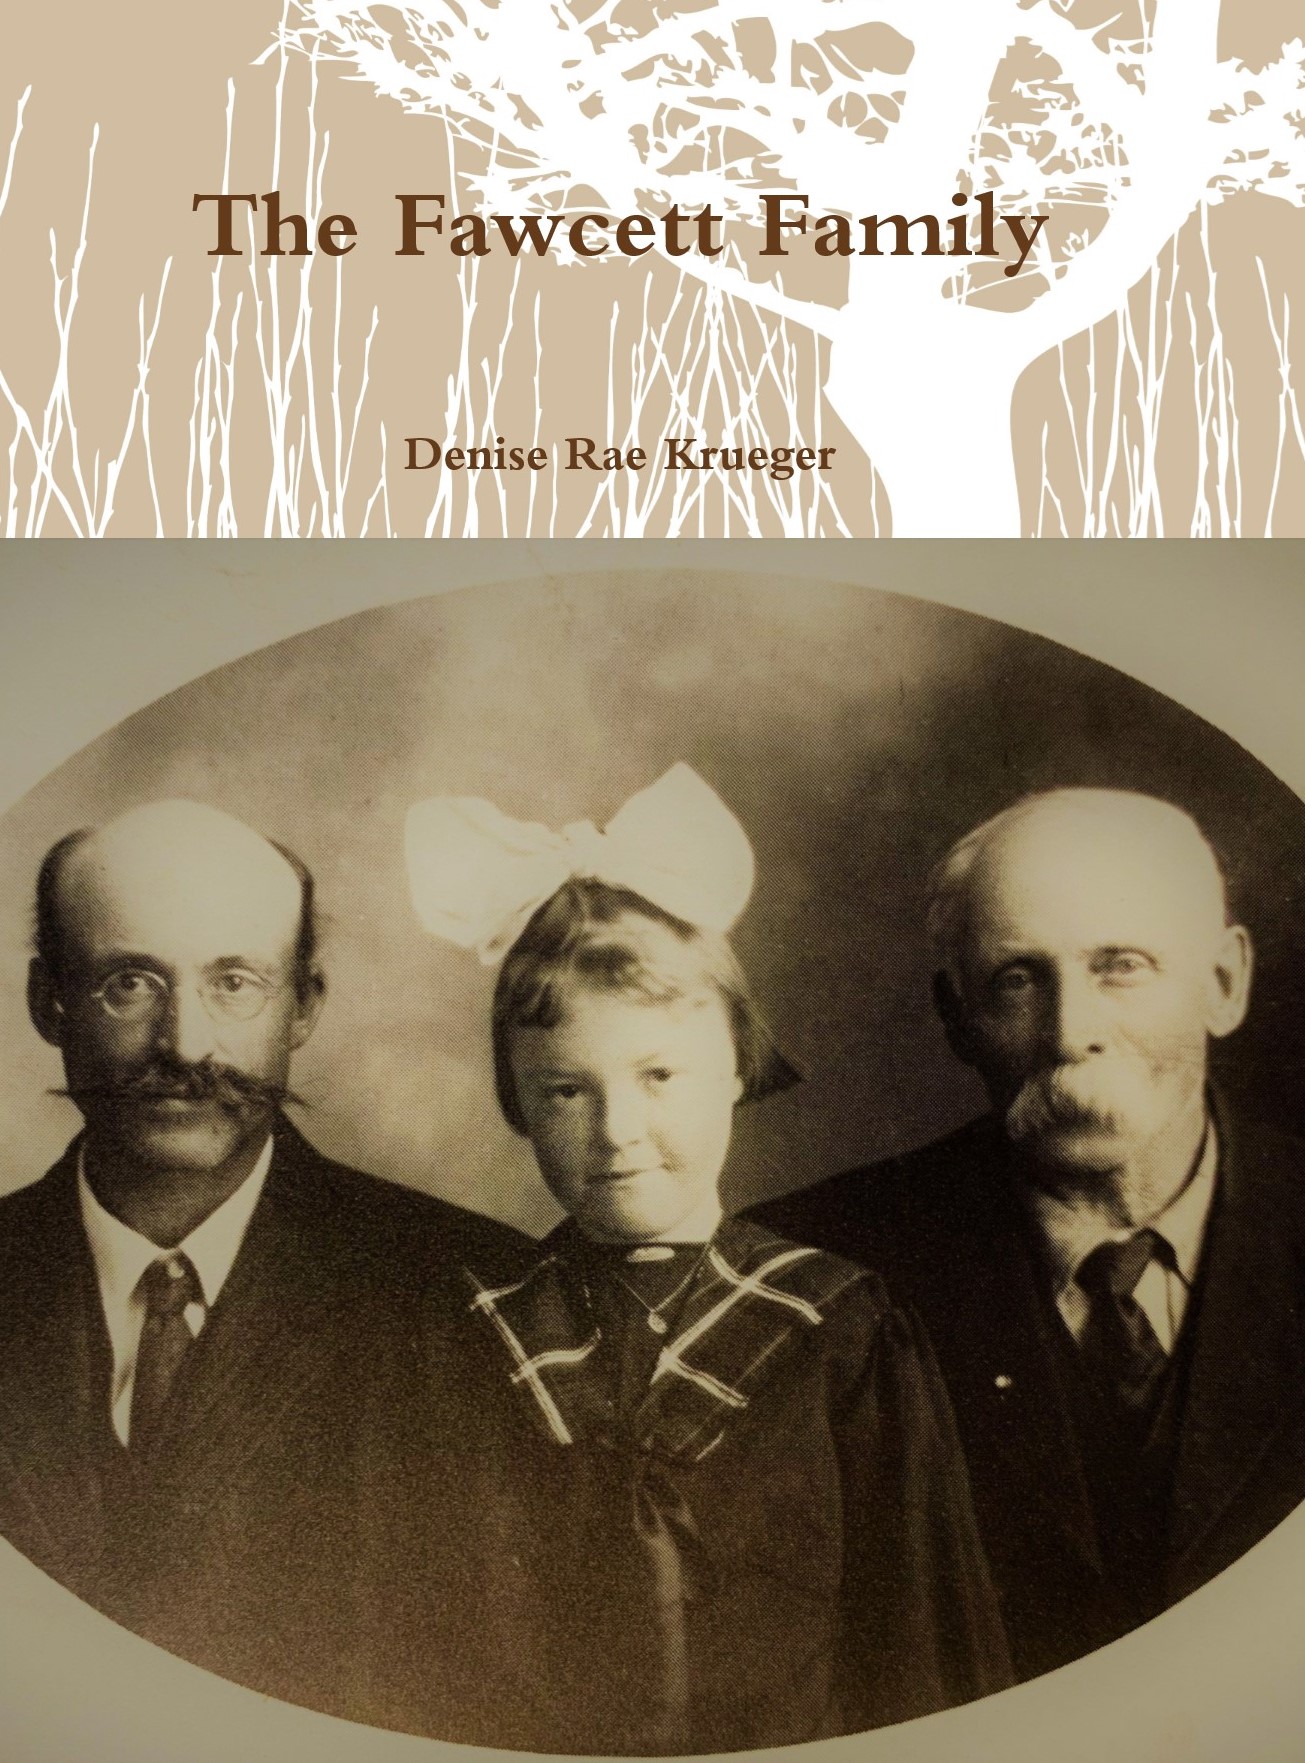 Fawcett Family History